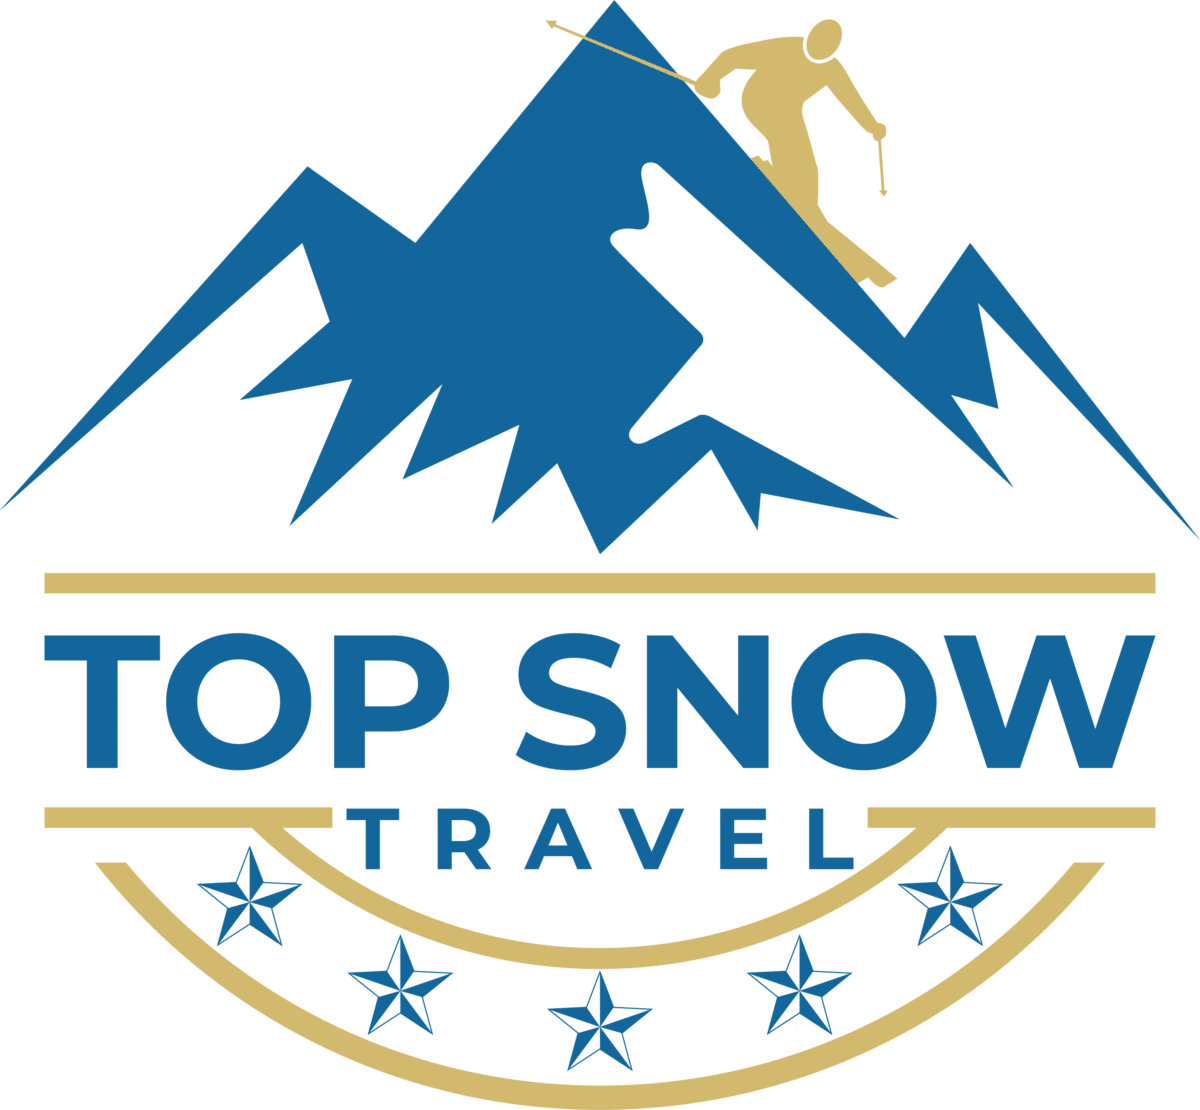 Top Snow Travel